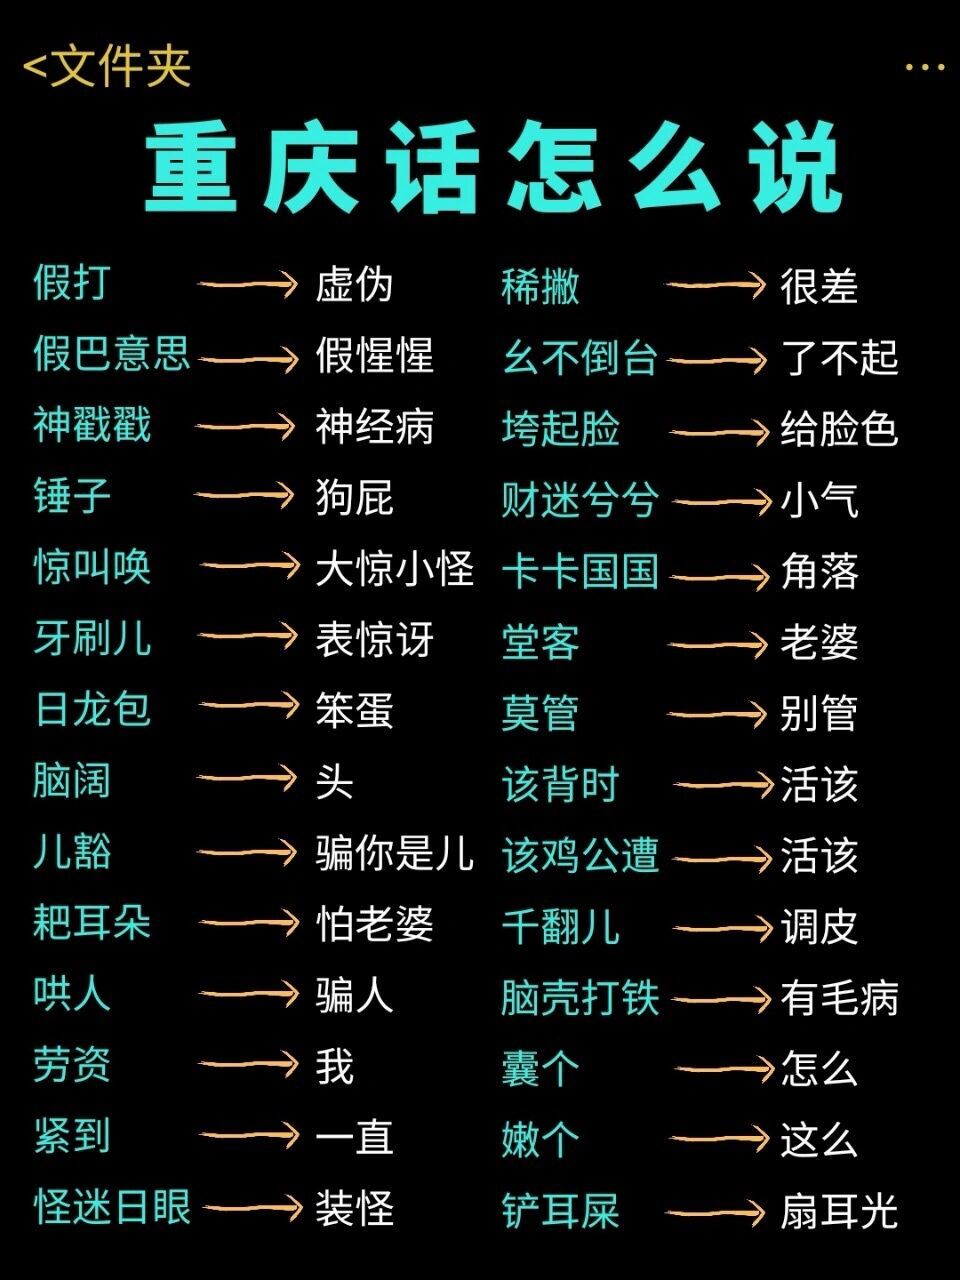 重庆话怎么说97 跟着少年们学重庆方言 96 重庆方言特别有趣,喜欢